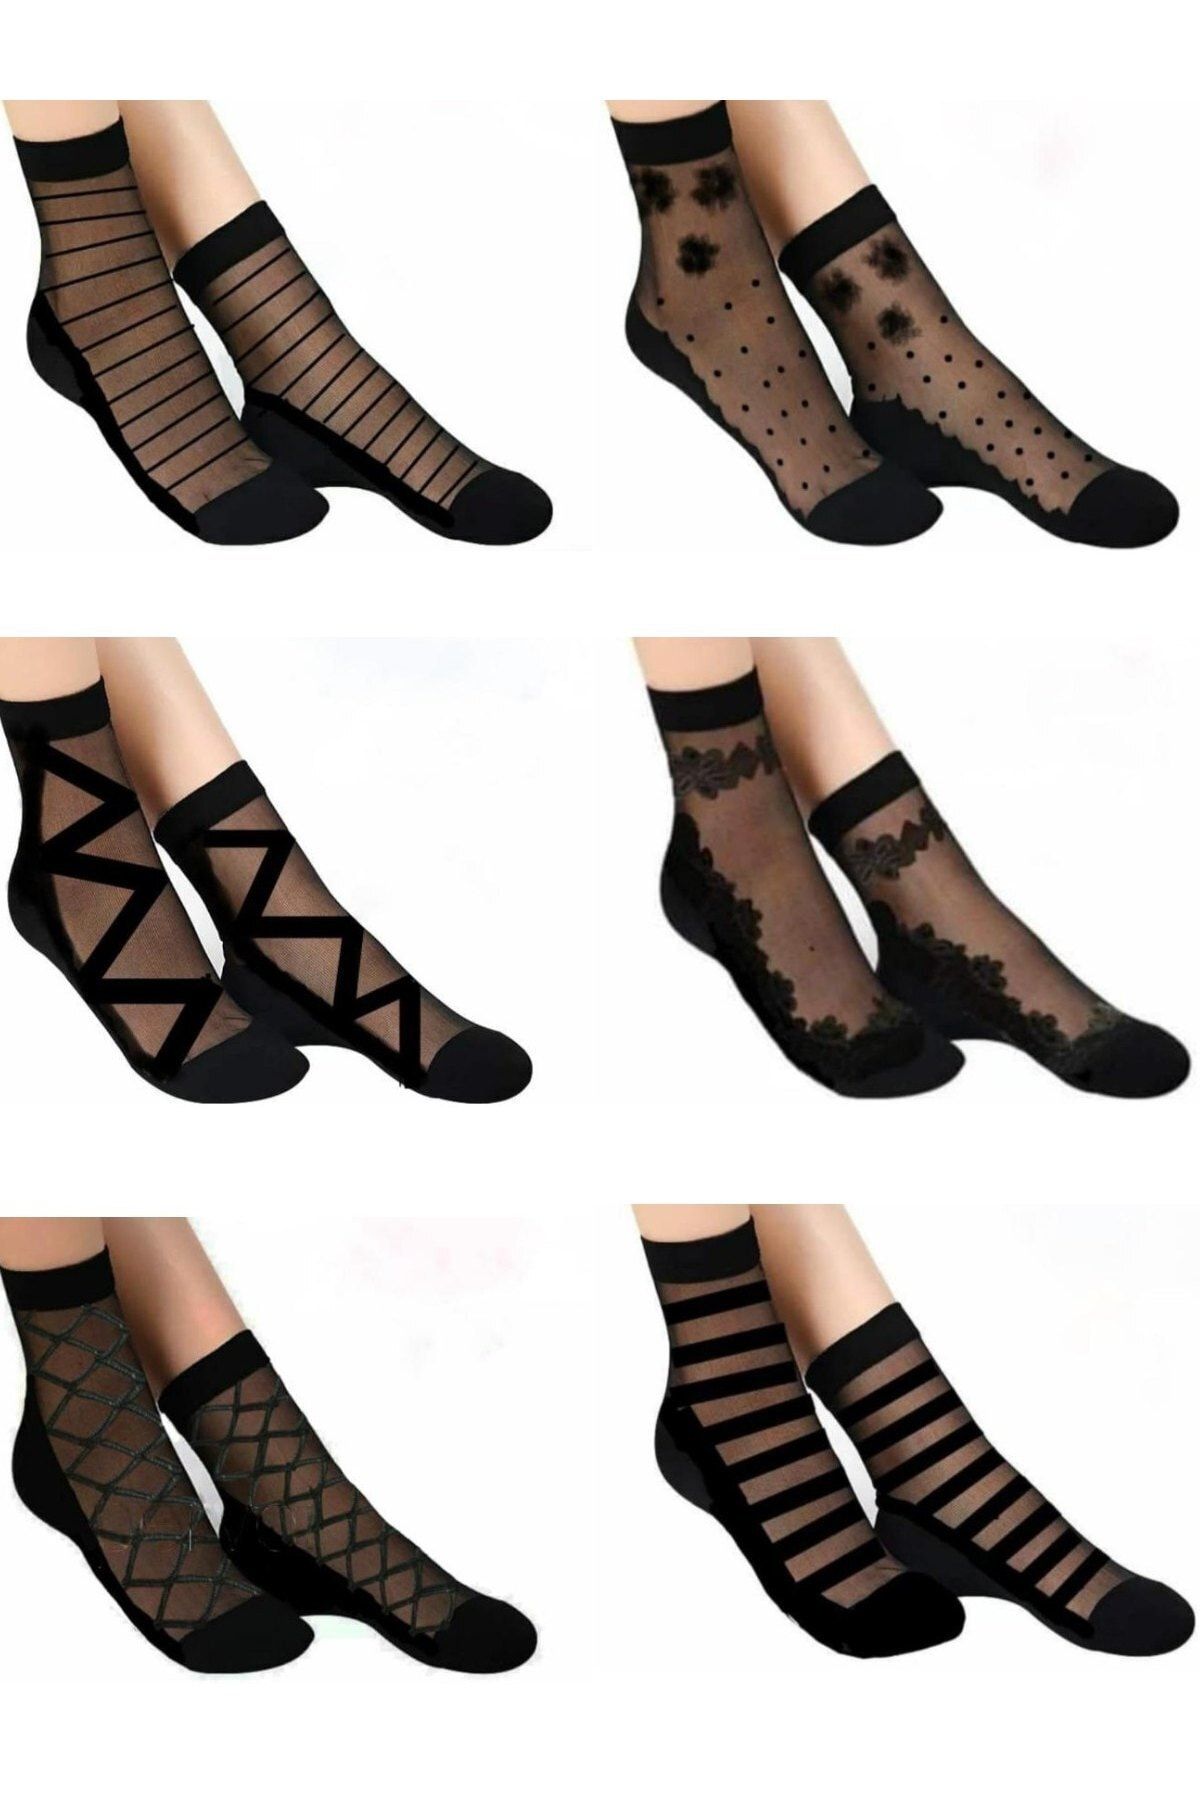 çorapmanya Kadın Desenli  Tül Çorap 6 Çift